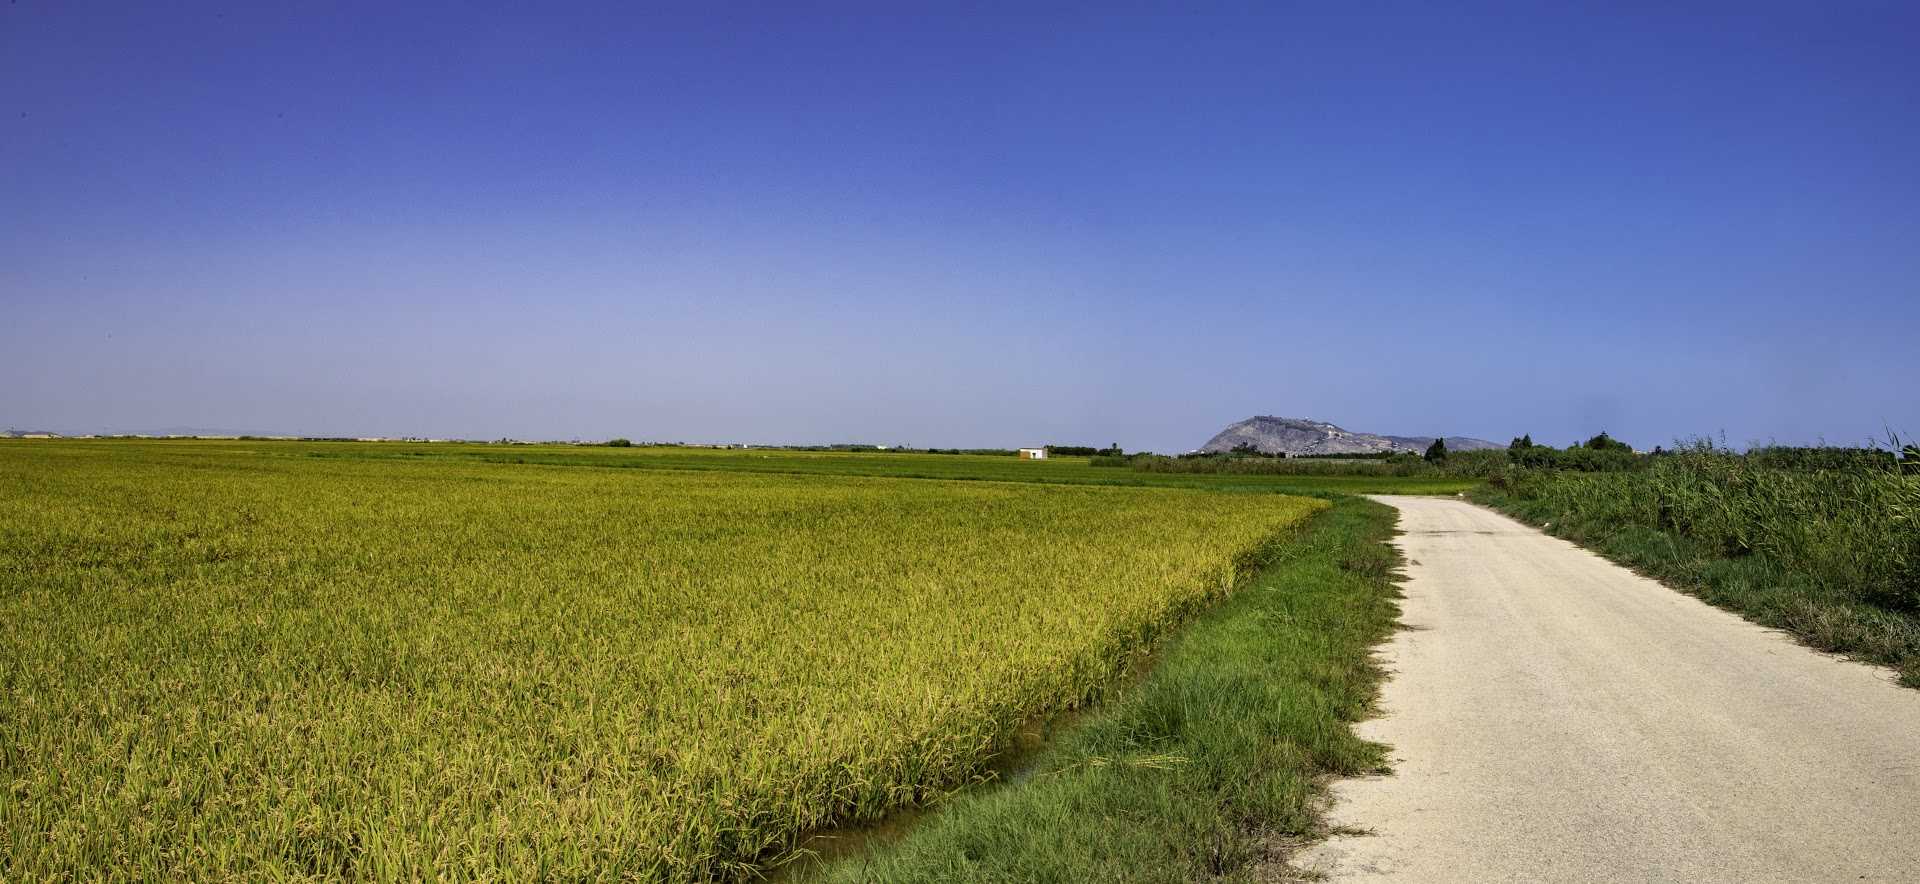 Ruta entre arrozales por el marjal sur